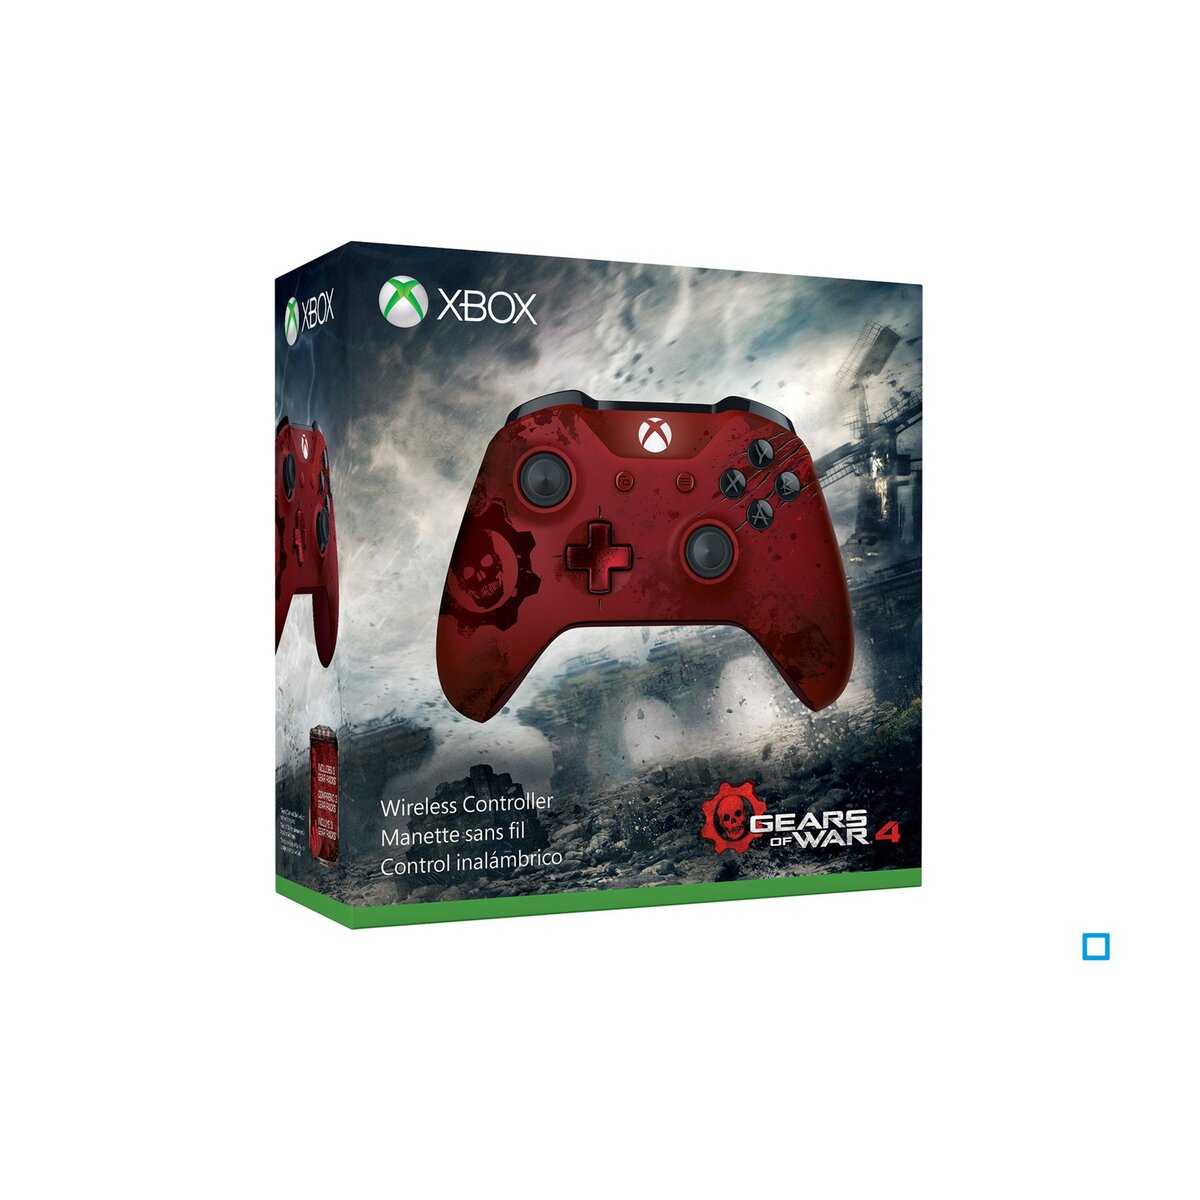 Manette Sans Fil Gear Of War 4 - Edition limitée - Xbox One